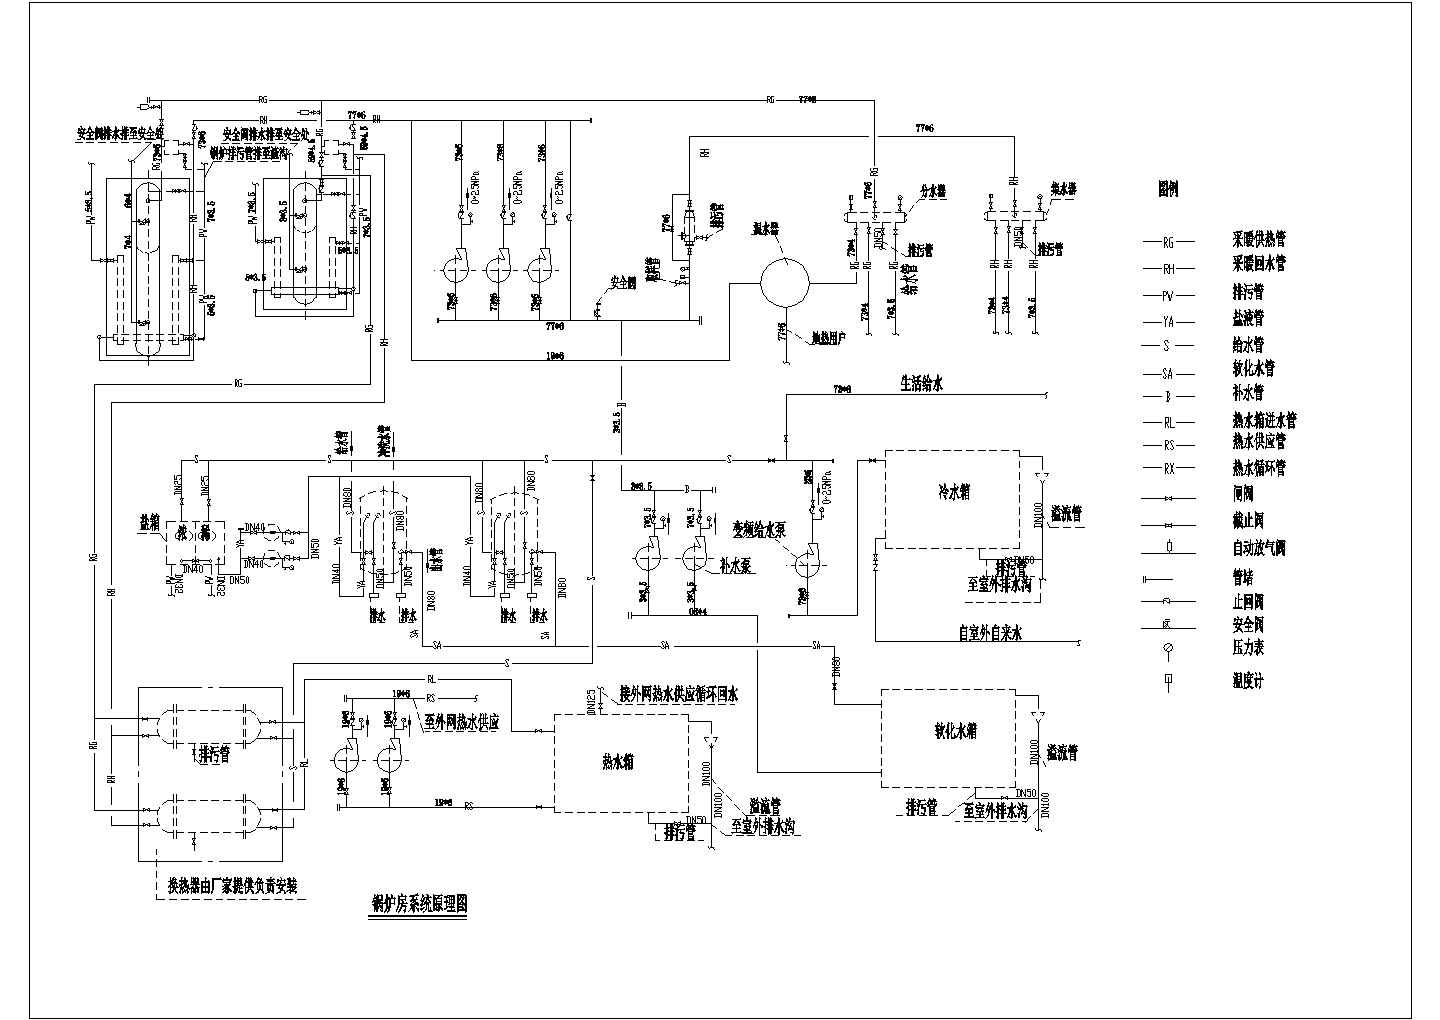 不同燃料锅炉的工作原理和系统图(图1)